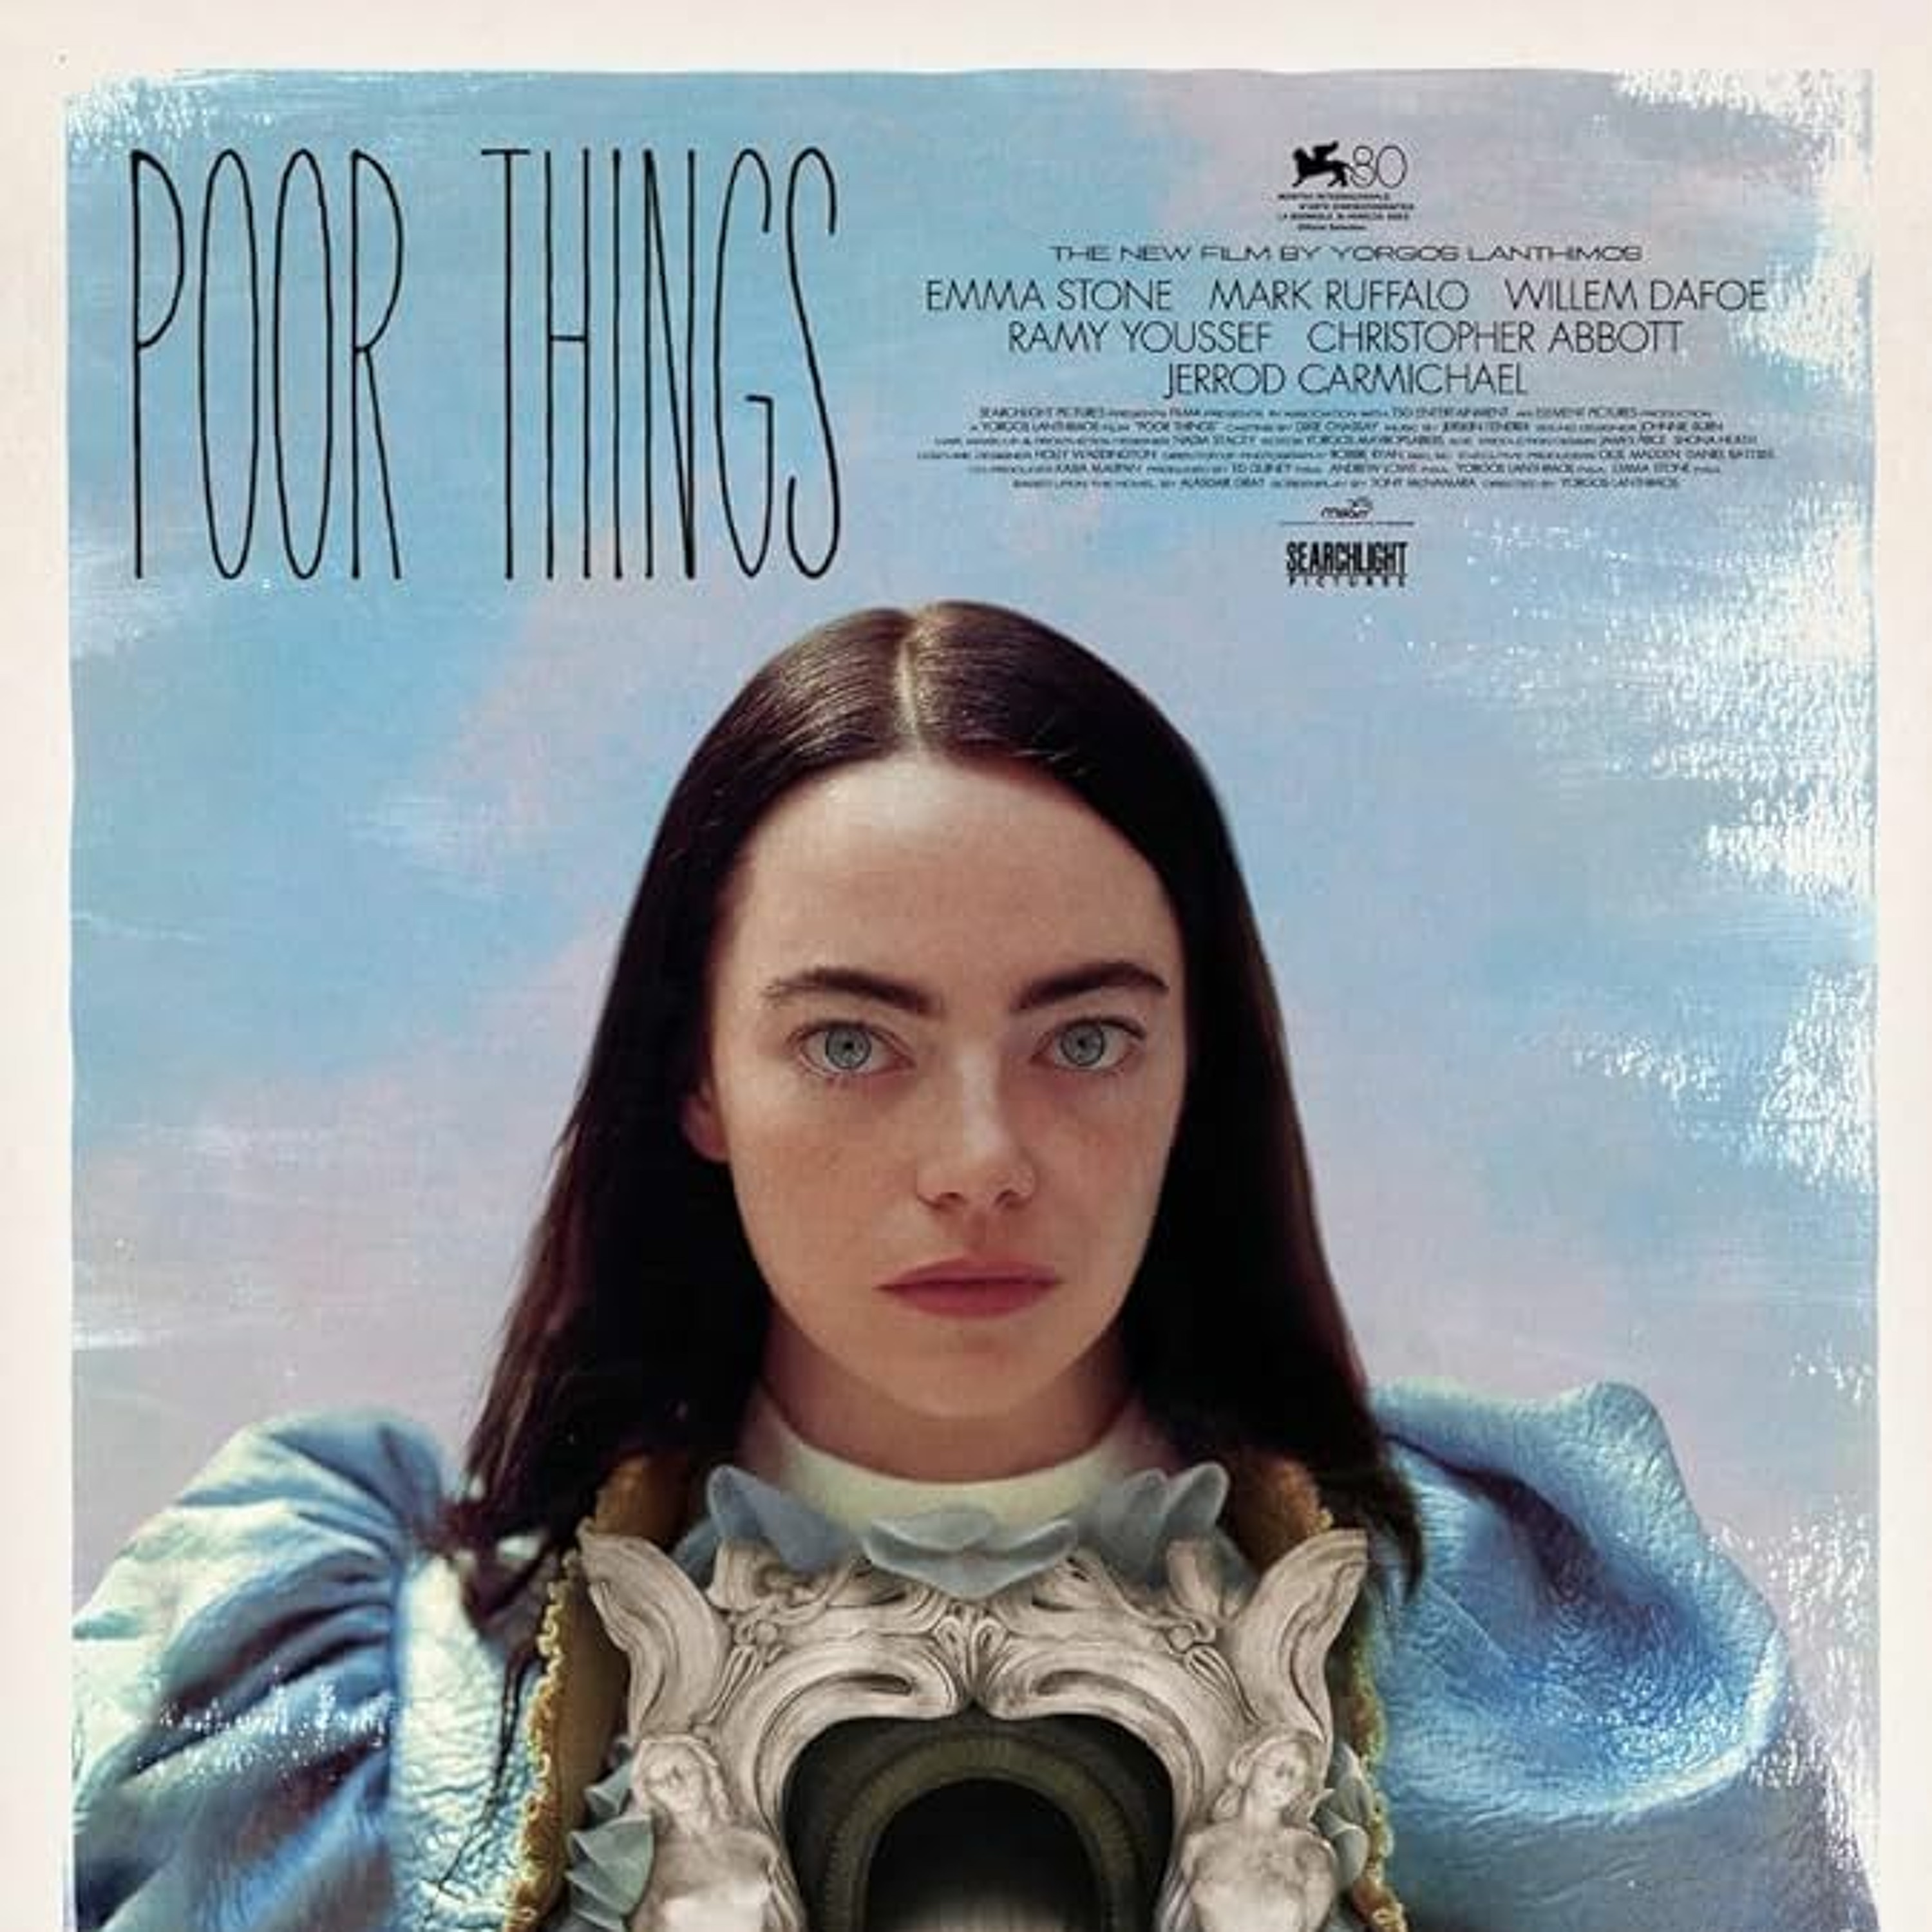 197 - Poor Things